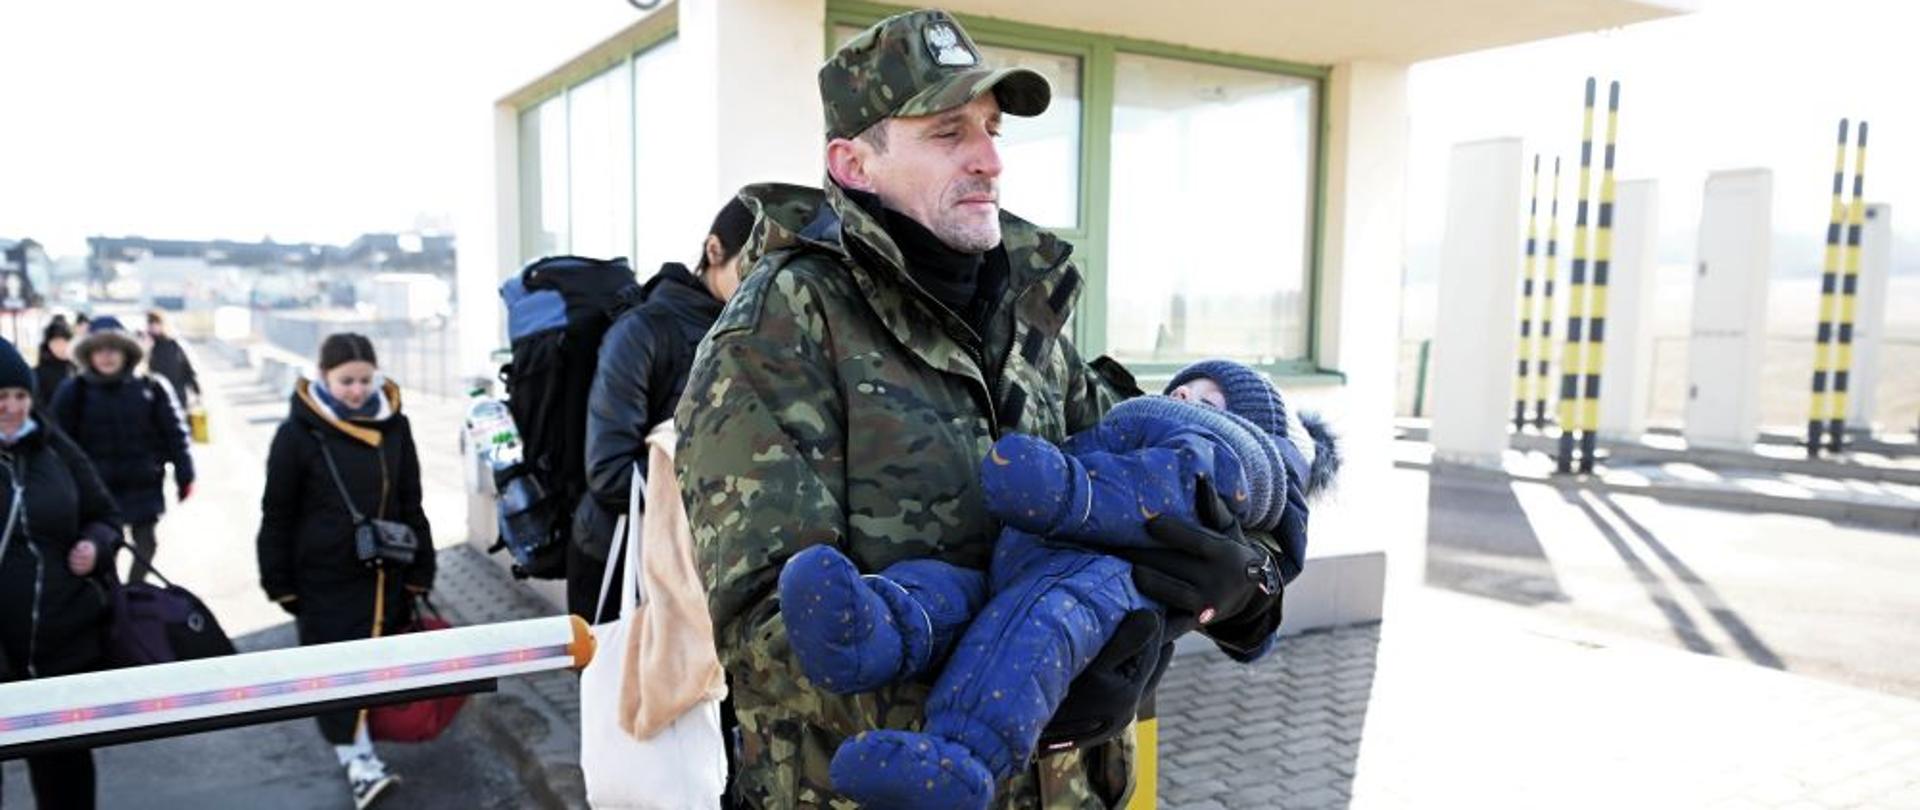 Funkcjonariusz Straży Granicznej pomaga uchodźcom z Ukrainy przejść granicę z Polską w Medyce. Pomocy w Polsce szukają głównie kobiety z dziećmi.
Fot. PAP/Darek Delmanowicz
